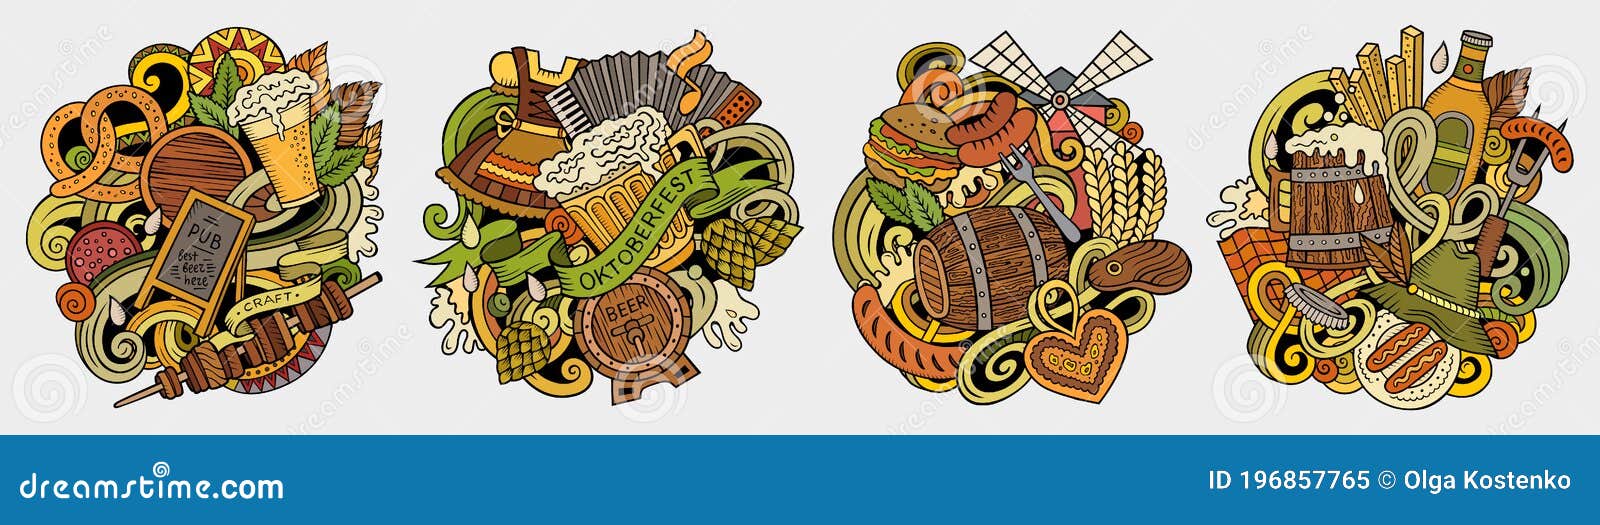 Bier Festkarikaturvektorgekritzel-Entwurfssatz Bunte detaillierte Zusammensetzungen mit Los Objekten und Symbolen Oktoberfest Lokalisiert auf weißen Abbildungen Lebensmittel- und Getränkfahne